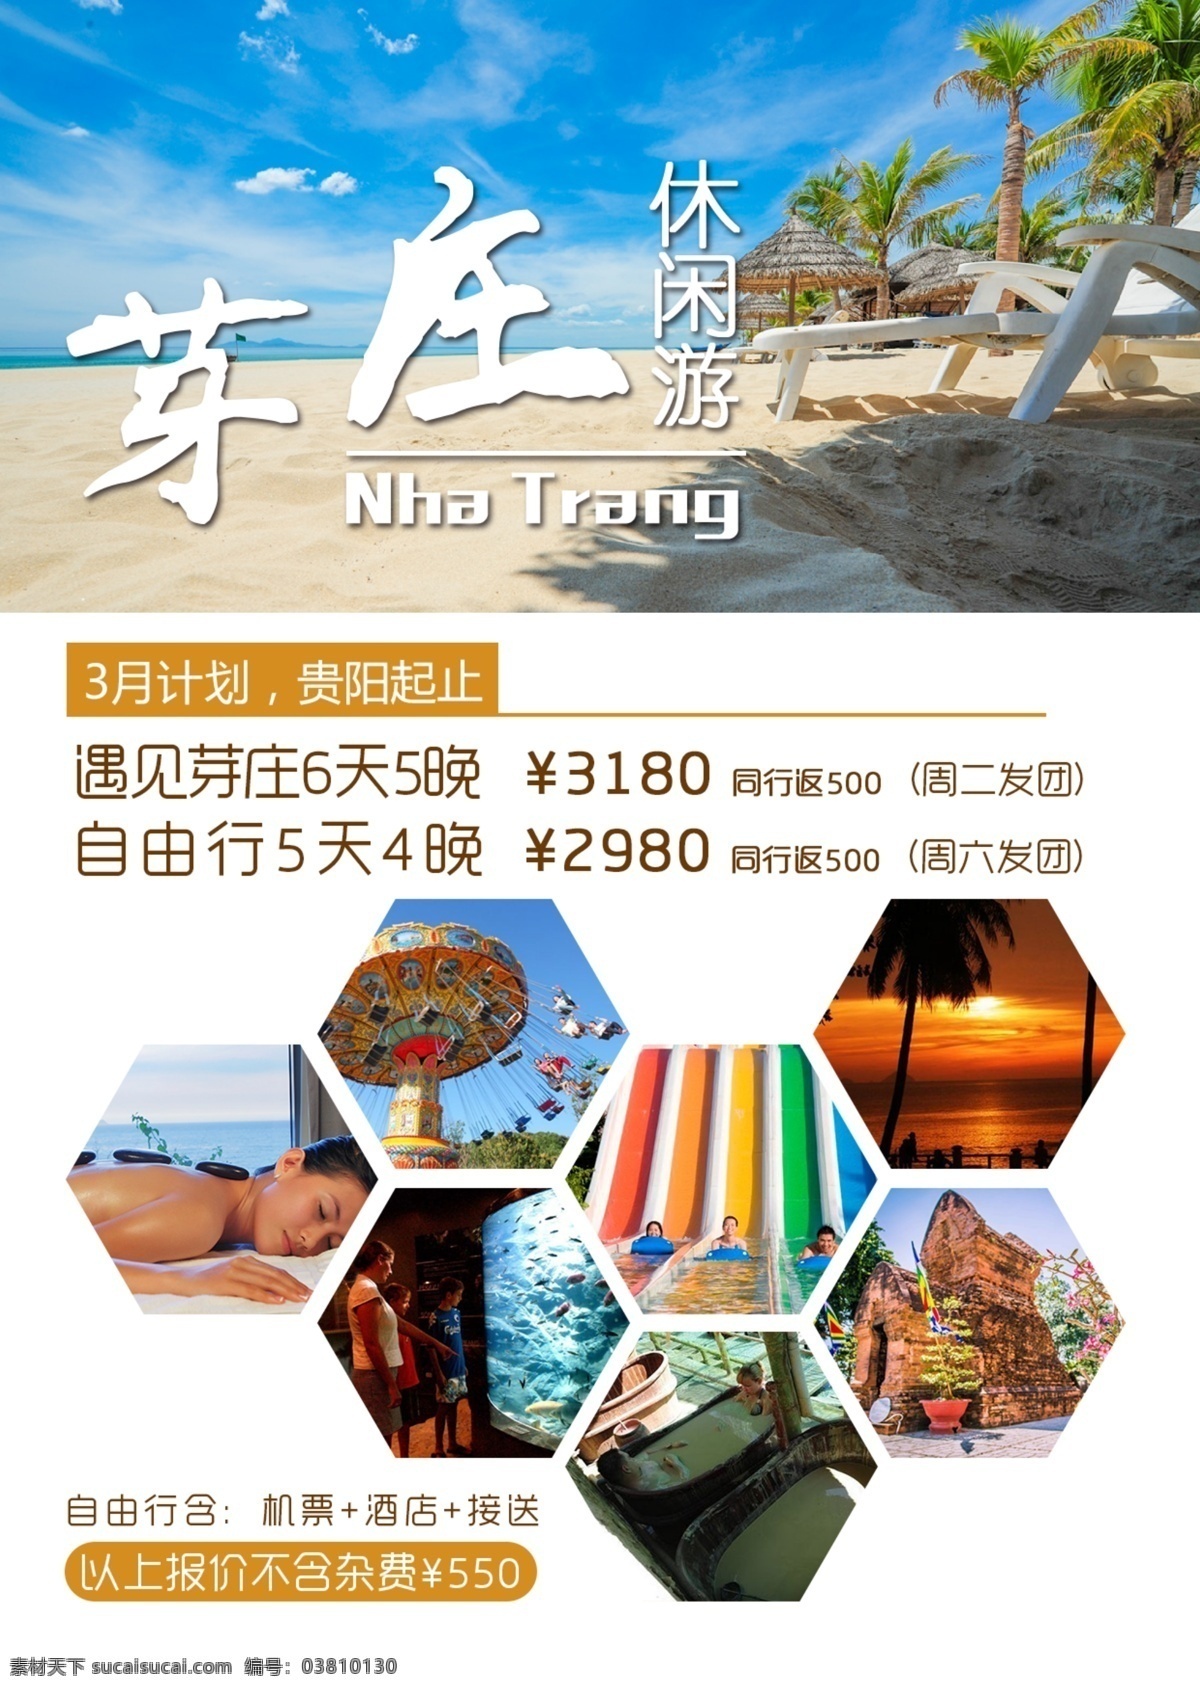 芽庄 旅游产品 广告 越南 旅游广告 海边 沙滩 按摩 矿泥浴 旅游